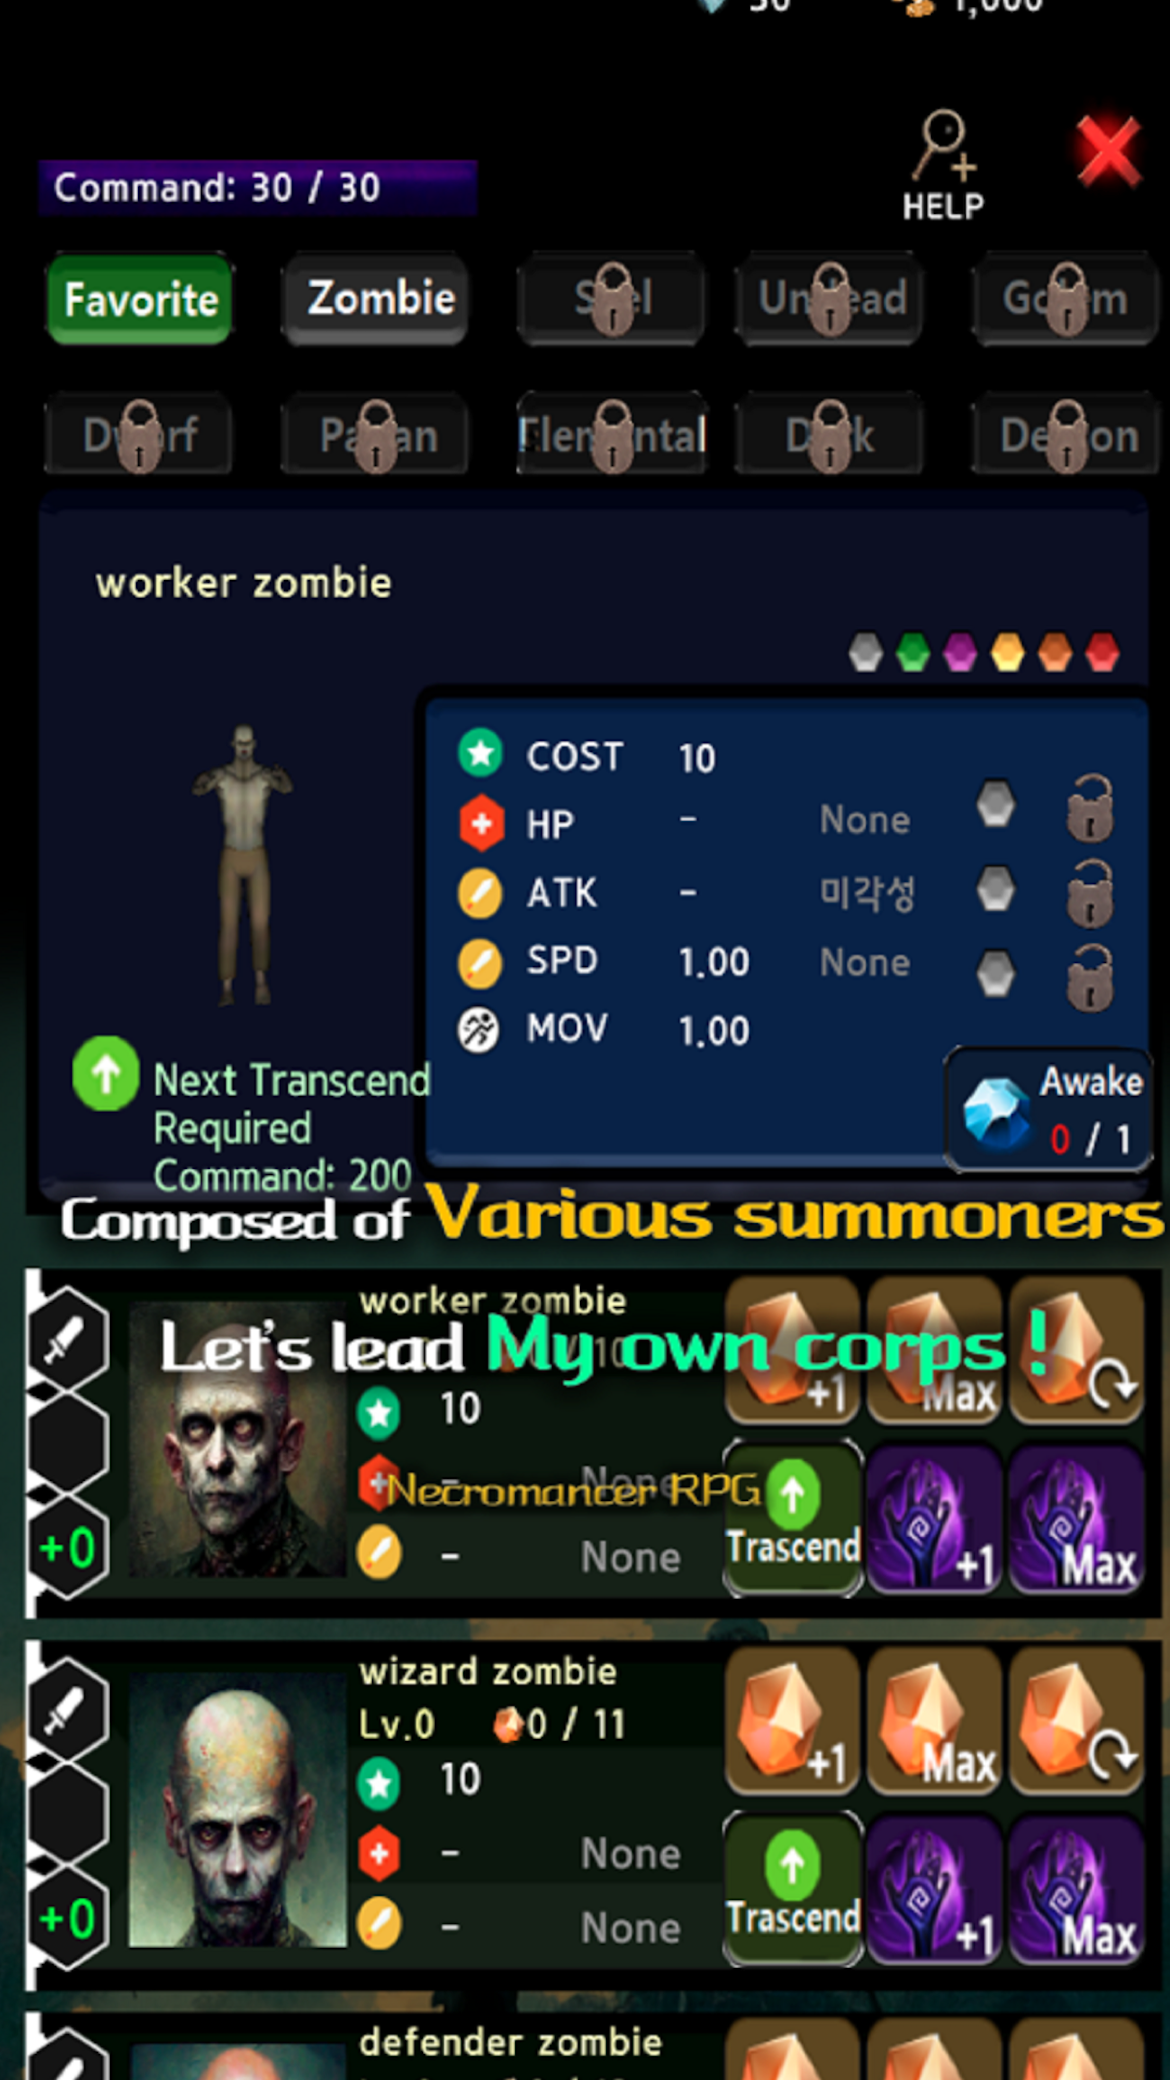 NecromancerRPG - Premium screenshot game